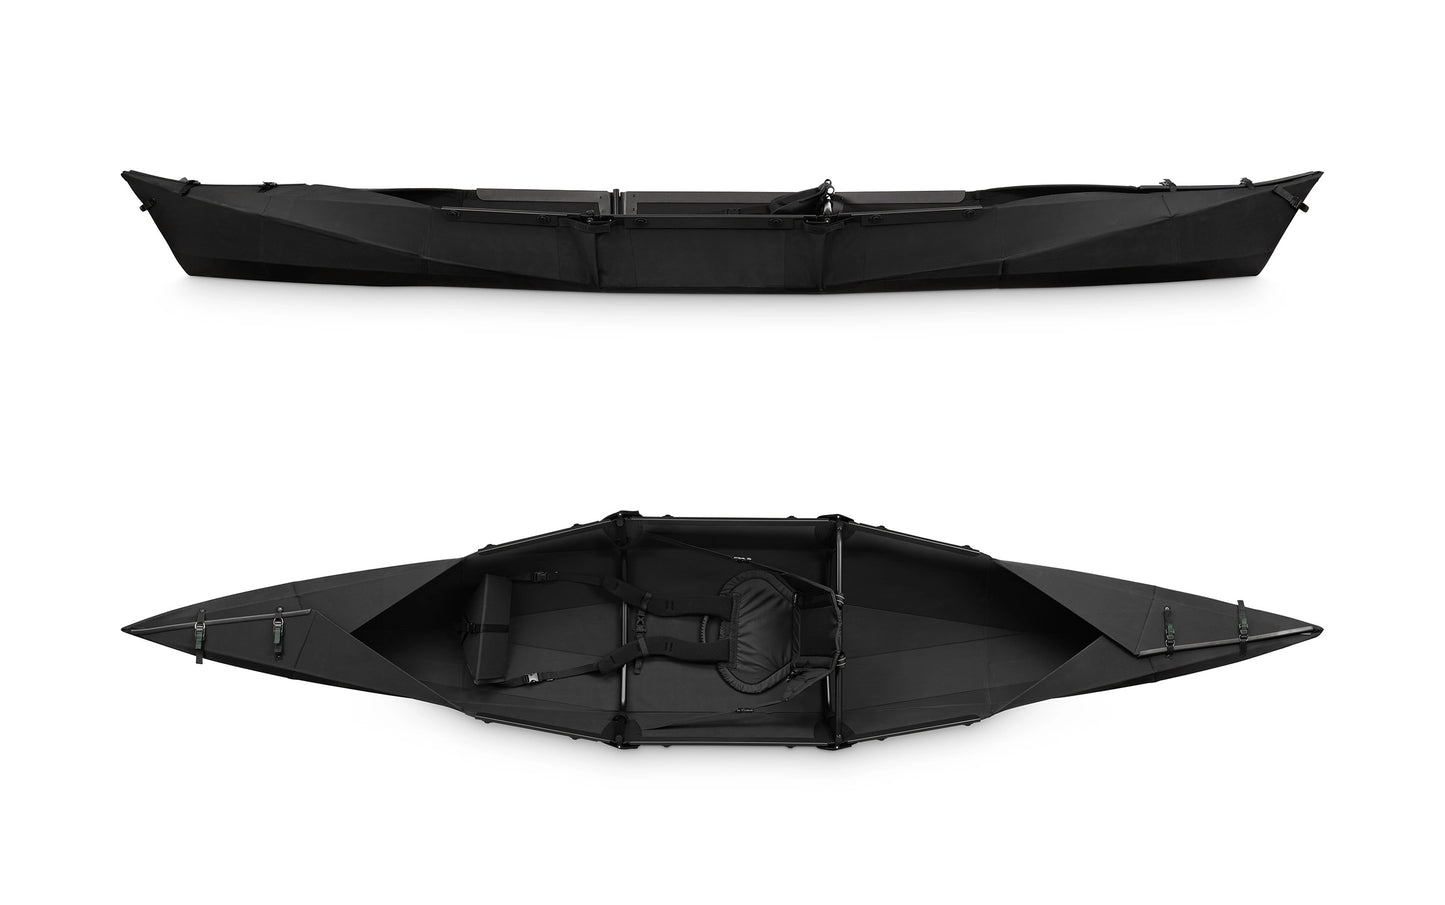 Folding kayak VIK 3.8 black/green